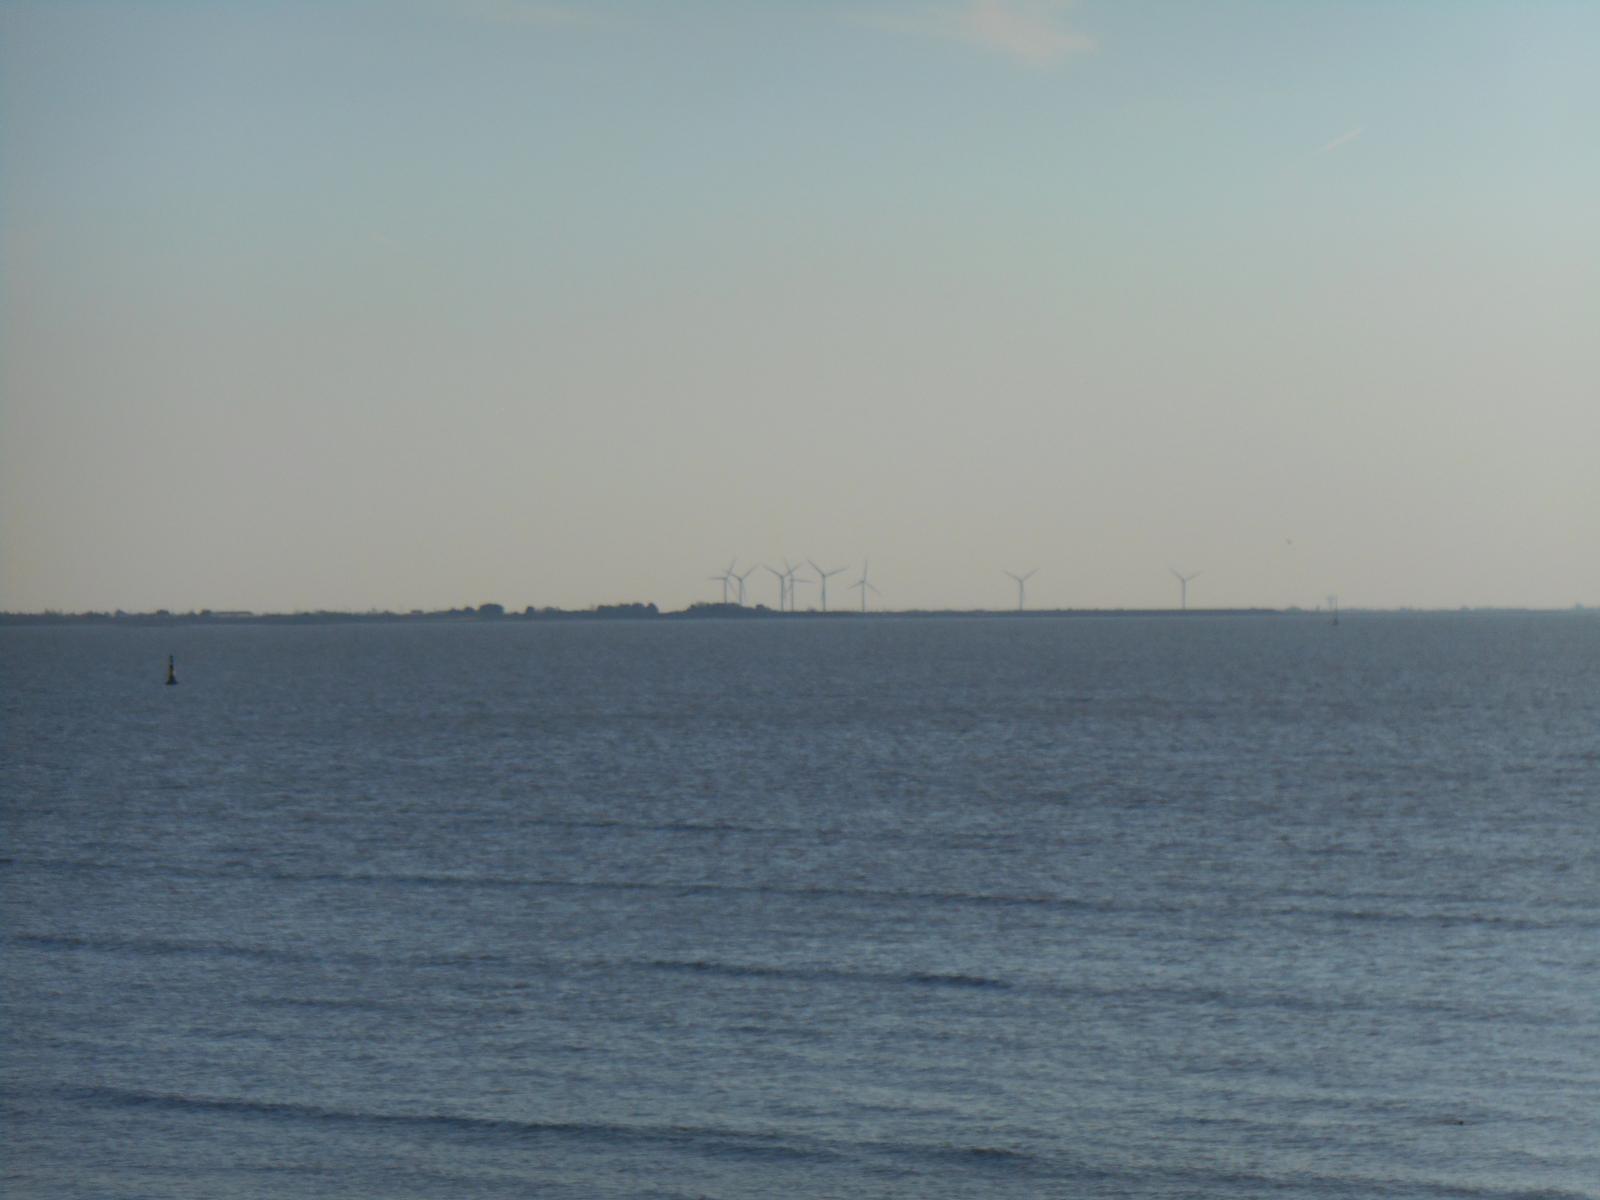 Les éoliennes, la Vendée au loin (Les Moutiers en Retz)